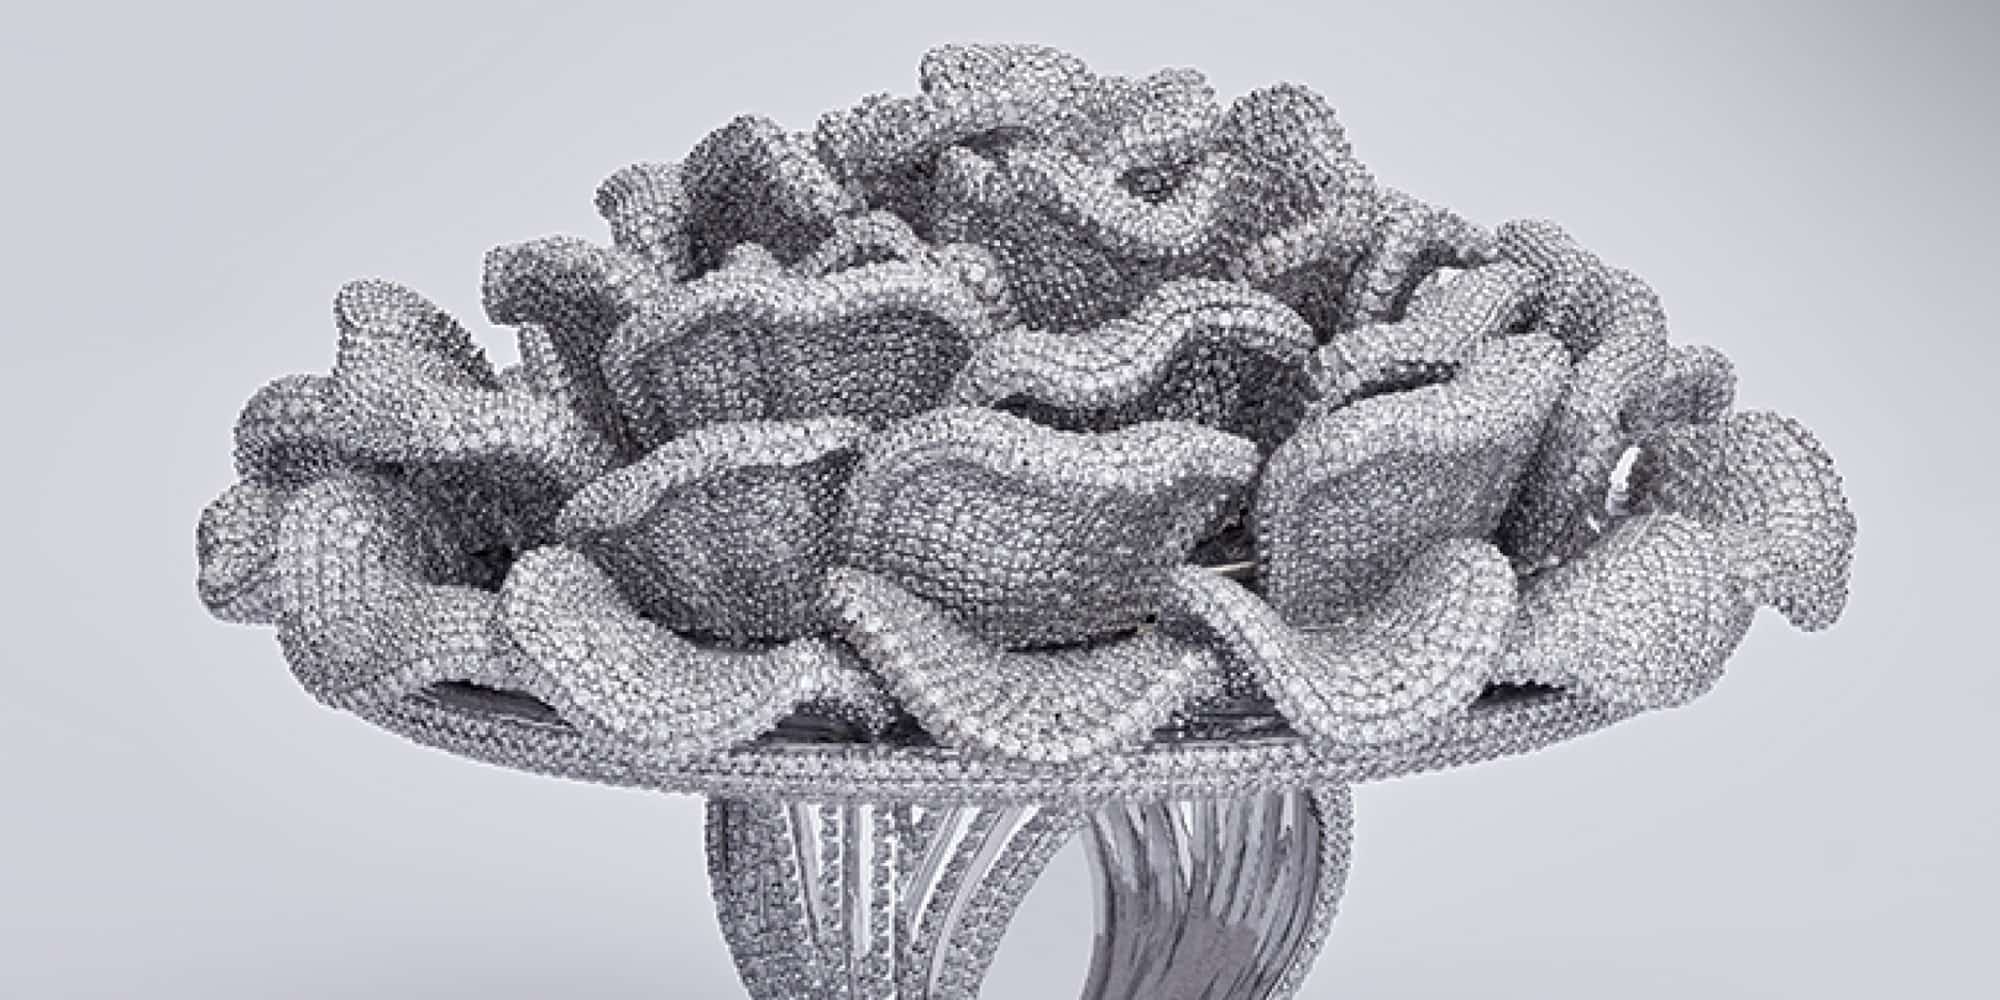 Δαχτυλίδι με 24.679 διαμάντια μπήκε στο βιβλίο των ρεκόρ Γκίνες